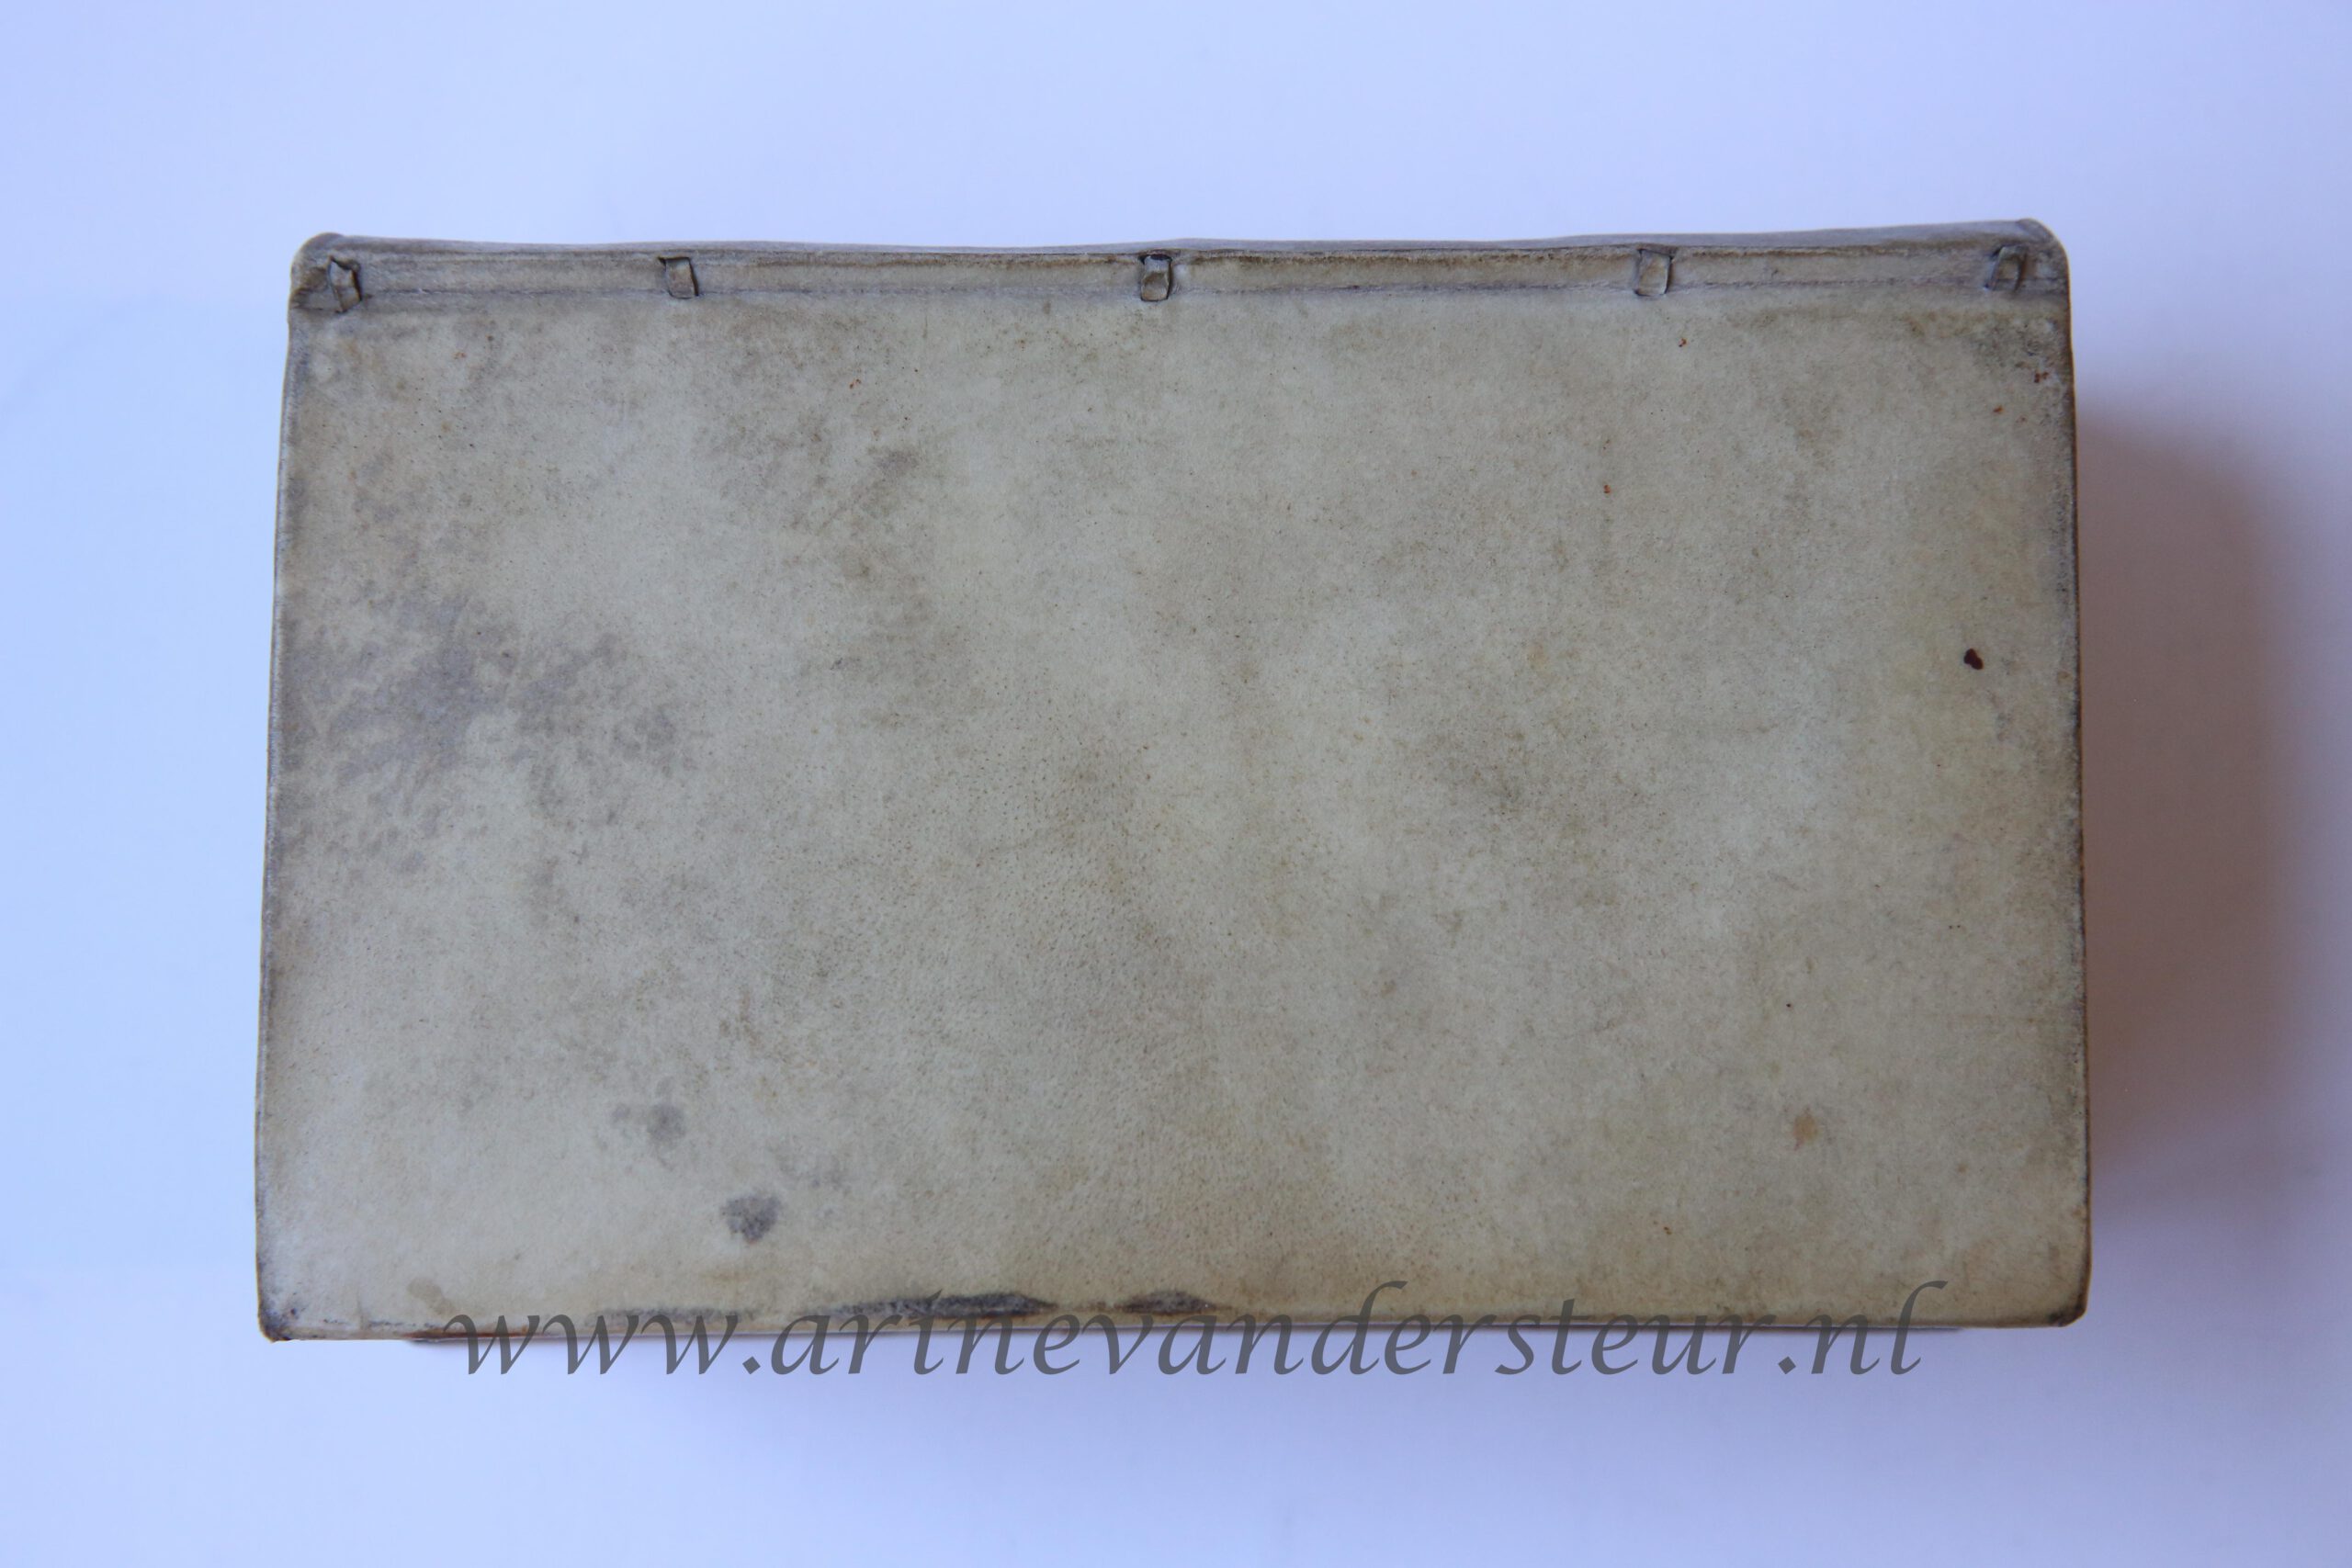 Alle de werken, Amsteldam by de Weduwe van Gysbert de Groot 1709, tweede druk, verzamelt en uitgegeven door Abraham Bogaert, Two volumes in one binding, 518 + 460 pp.